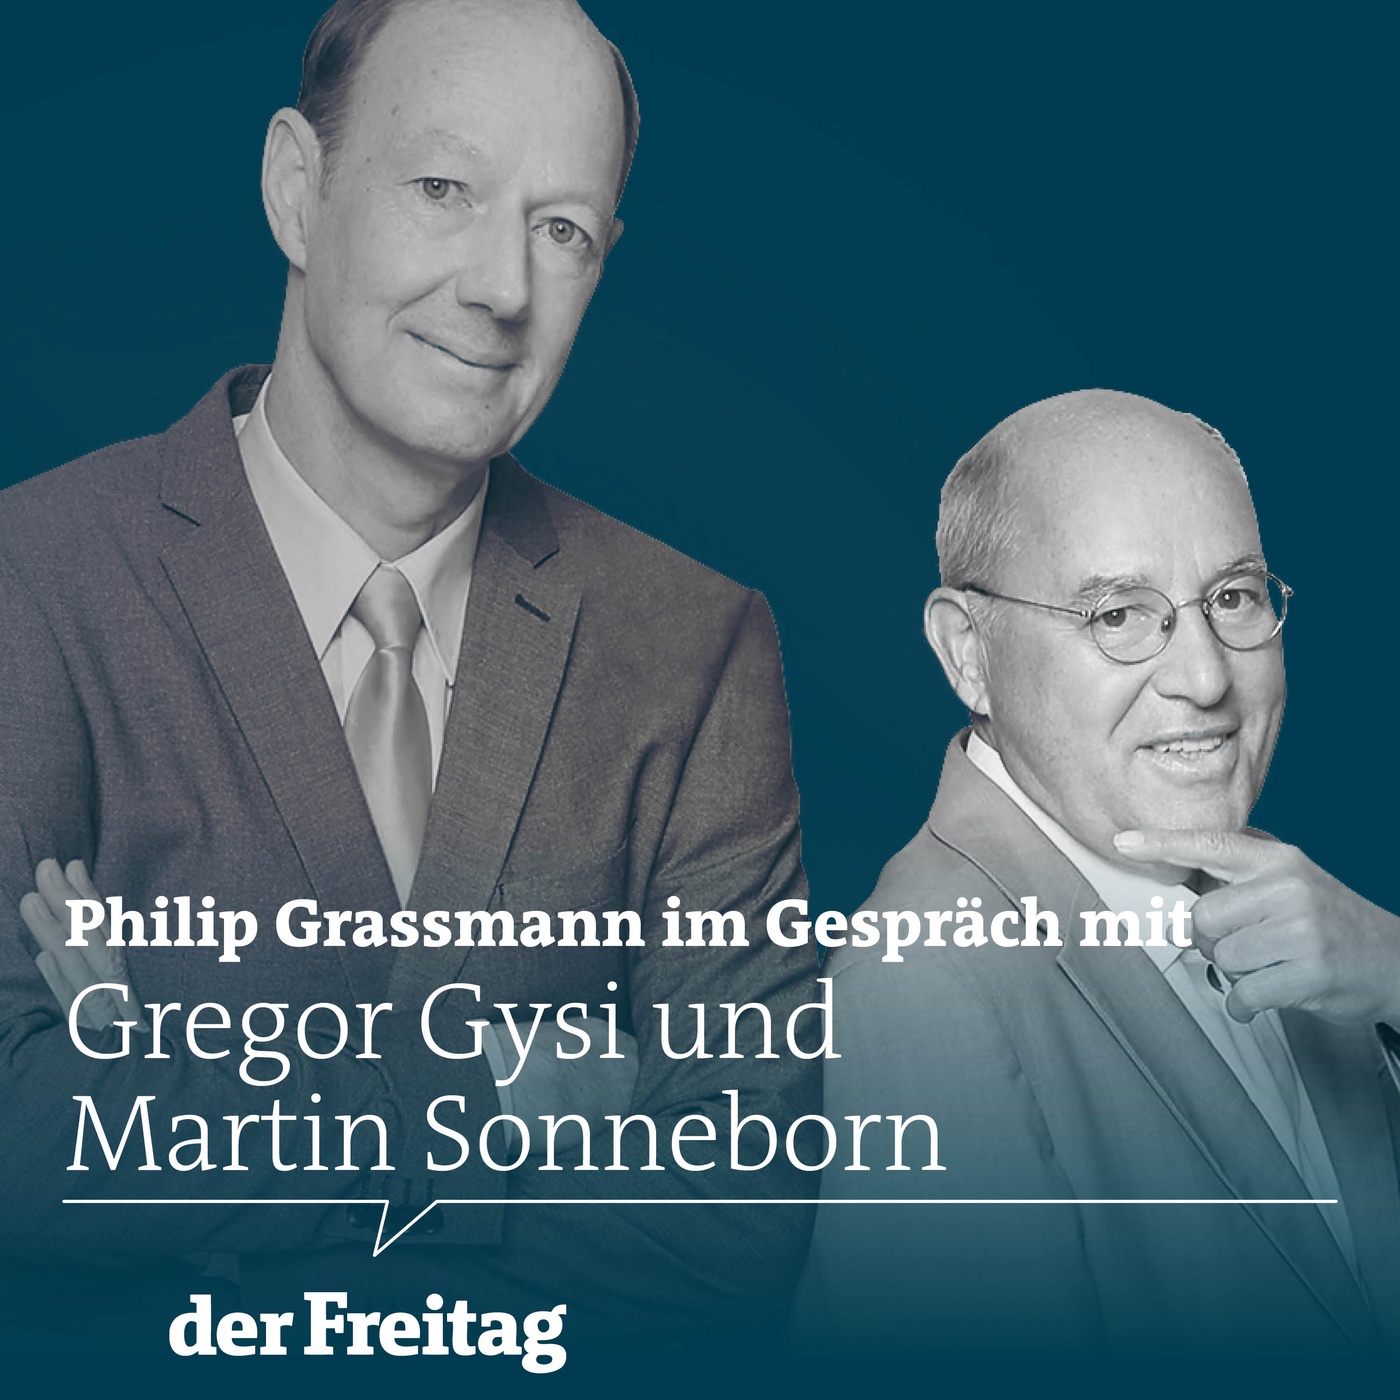 Gregor Gysi und Martin Sonneborn im Gespräch mit Philip Grassmann